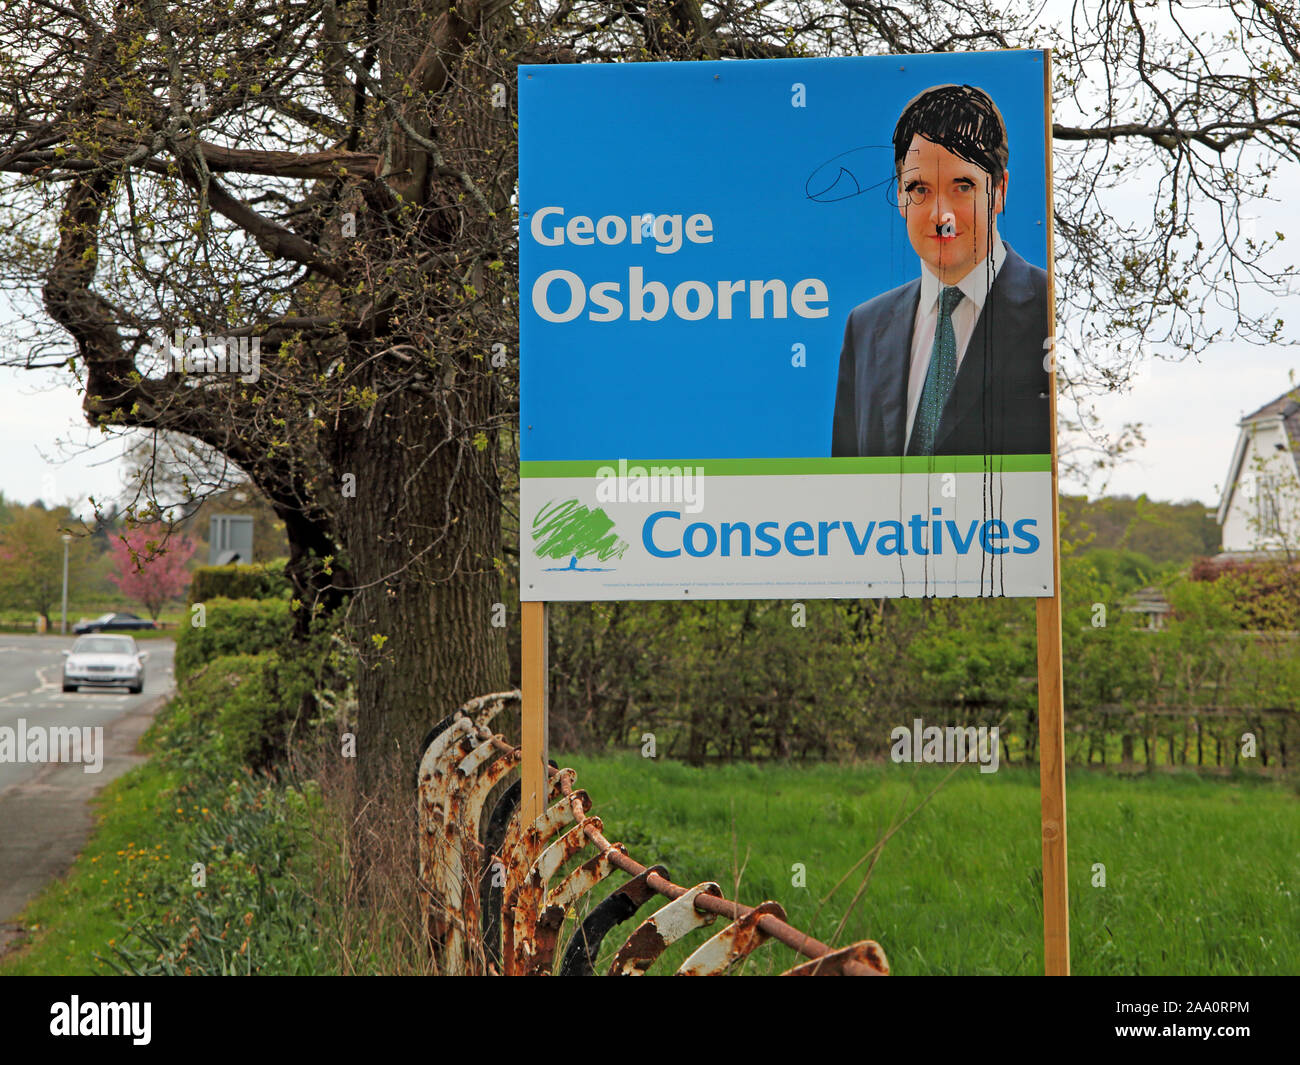 George Osborne défiguré des affiches électorales du parti conservateur et de publicité Tatton Knutsford Cheshire, Nord Ouest de l'Angleterre, Royaume-Uni Banque D'Images